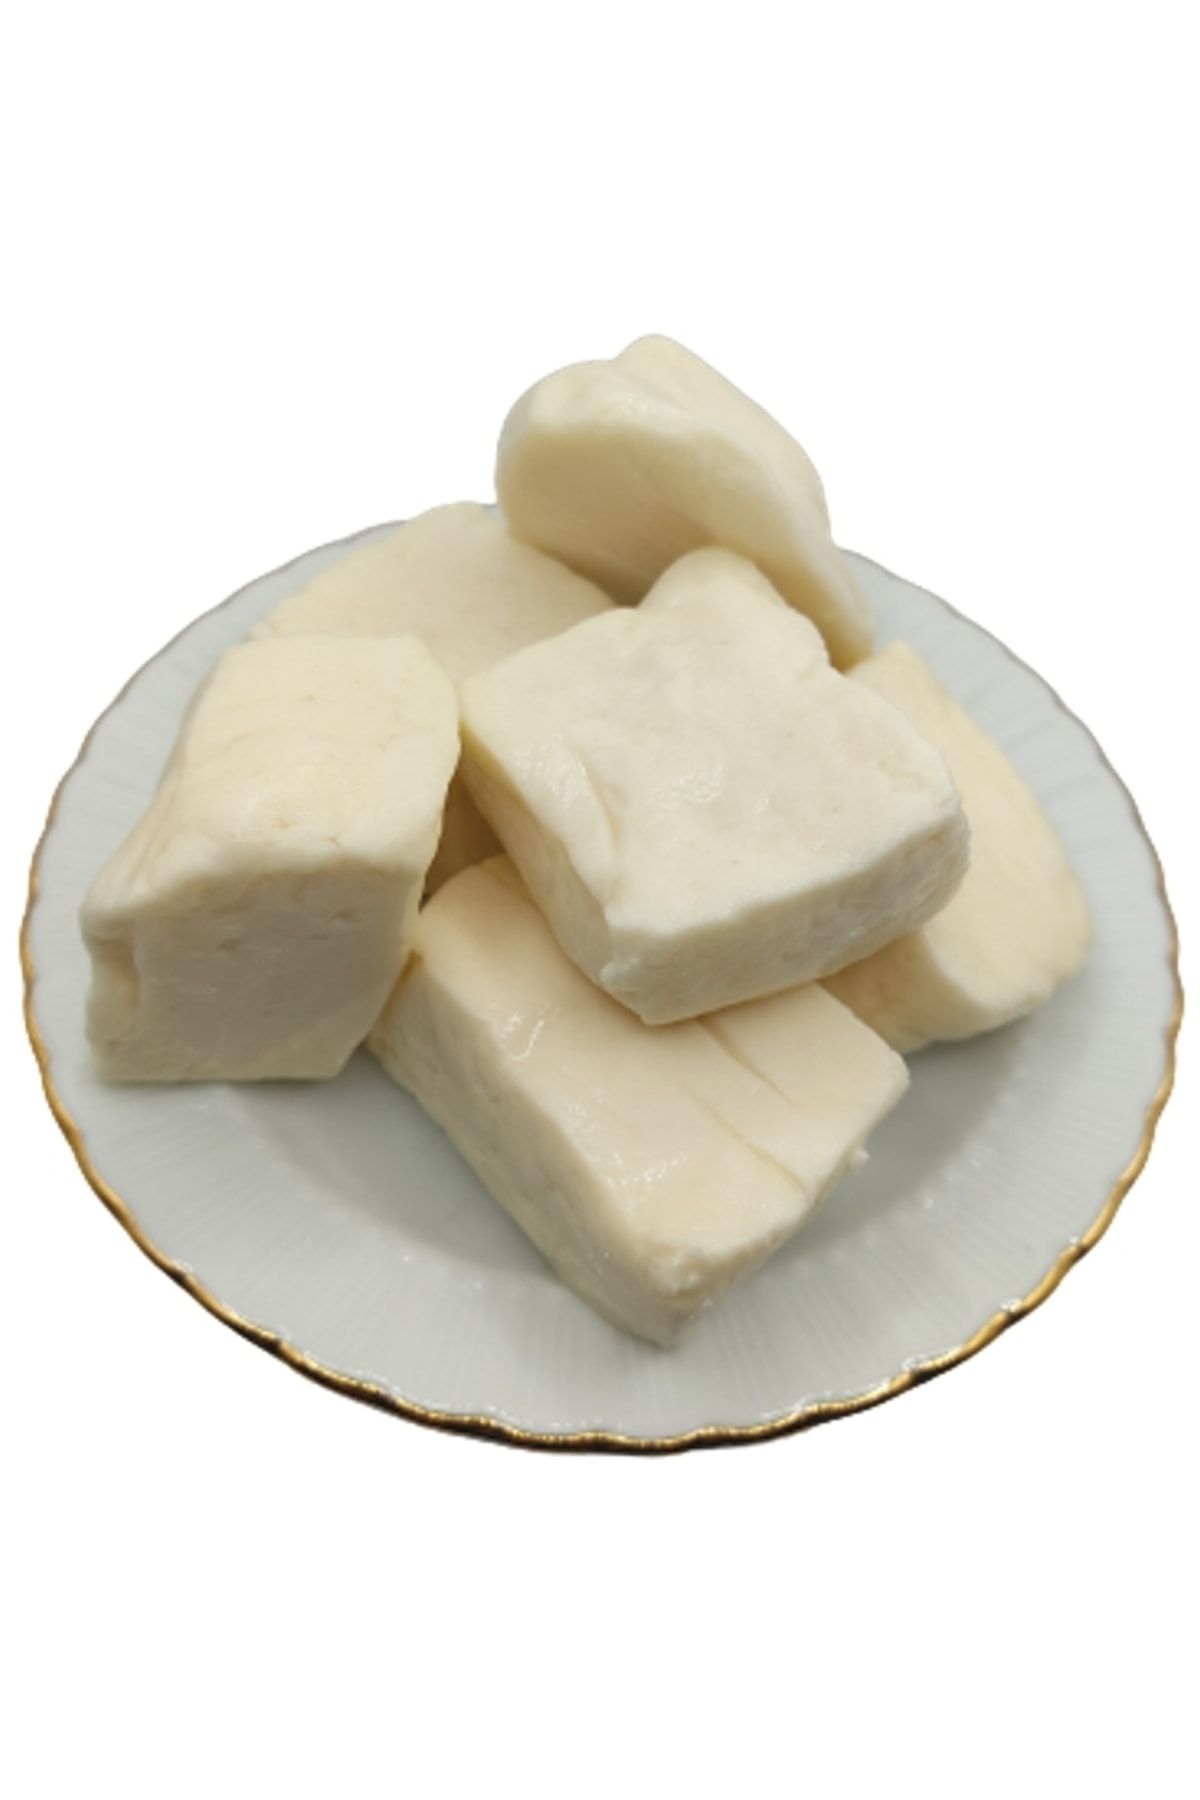 bakkal hasan Tam Yağlı Antep Peyniri (KEÇİ PEYNİRİ) 10 Kg -